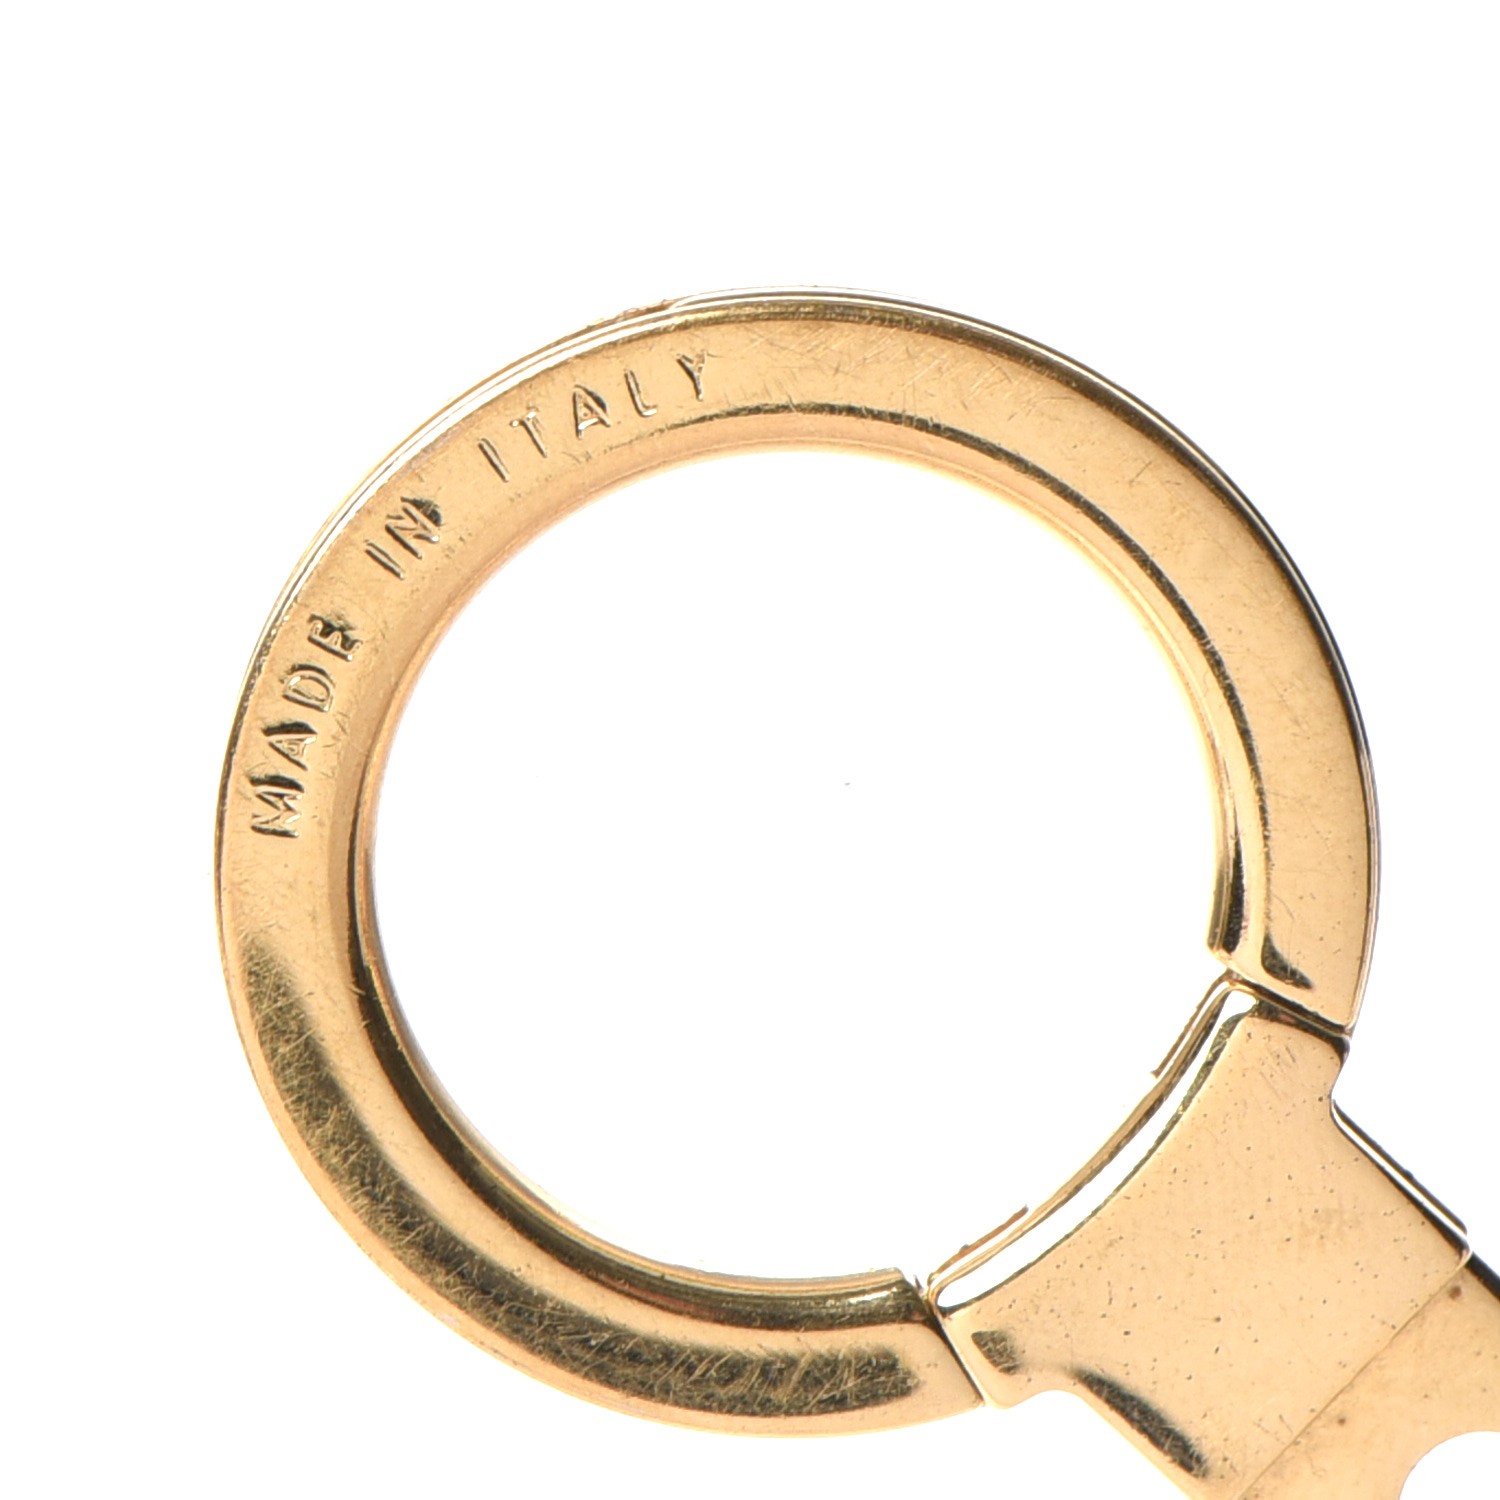 LOUIS VUITTON Key ring holder chain Bag charm AUTH metal rainbow